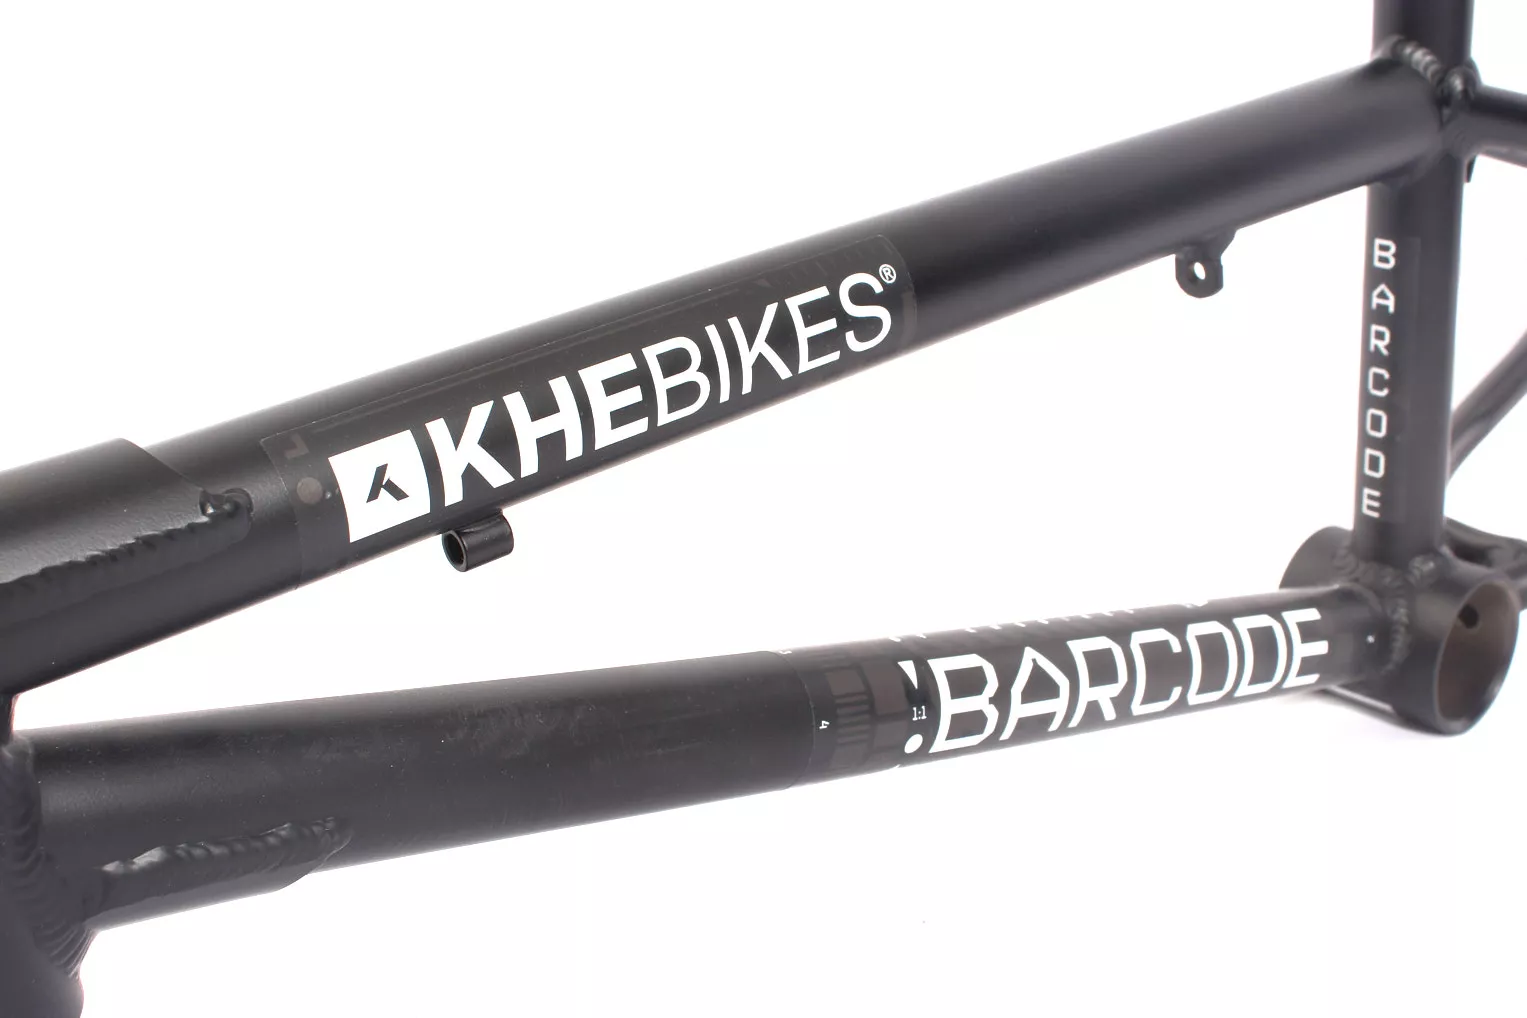 BMX frame KHE BARCODE 20 inch aluminum